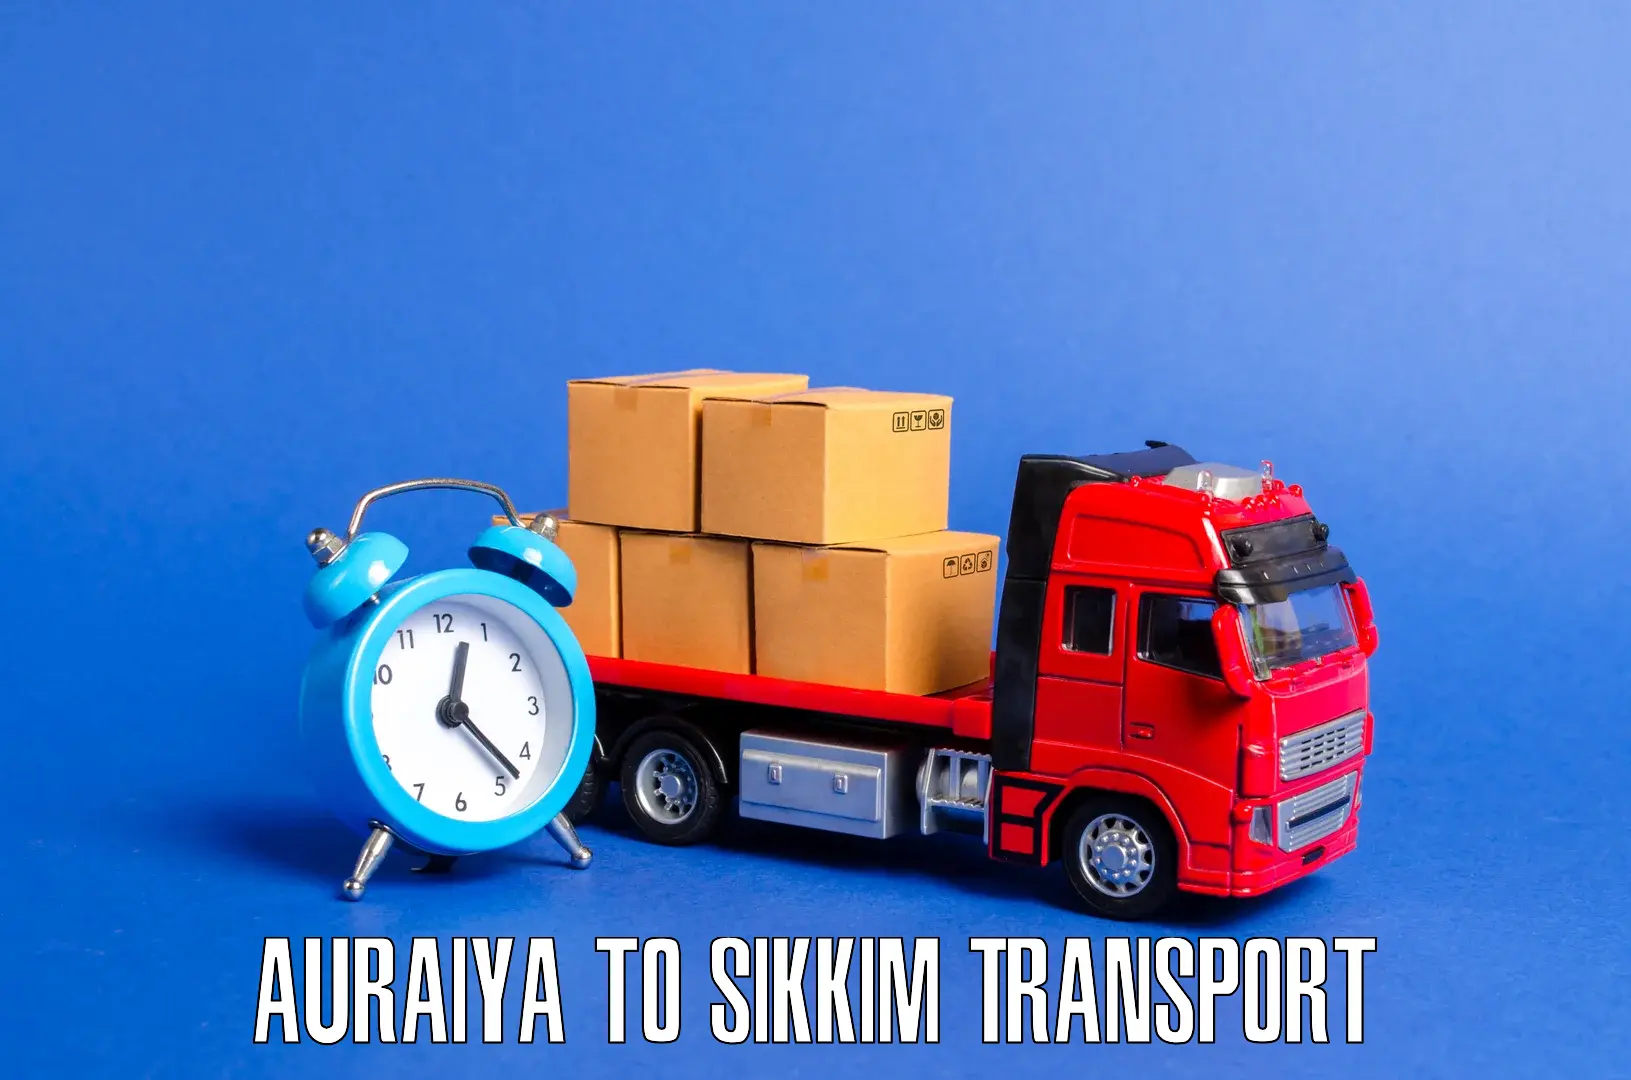 Pick up transport service Auraiya to Mangan